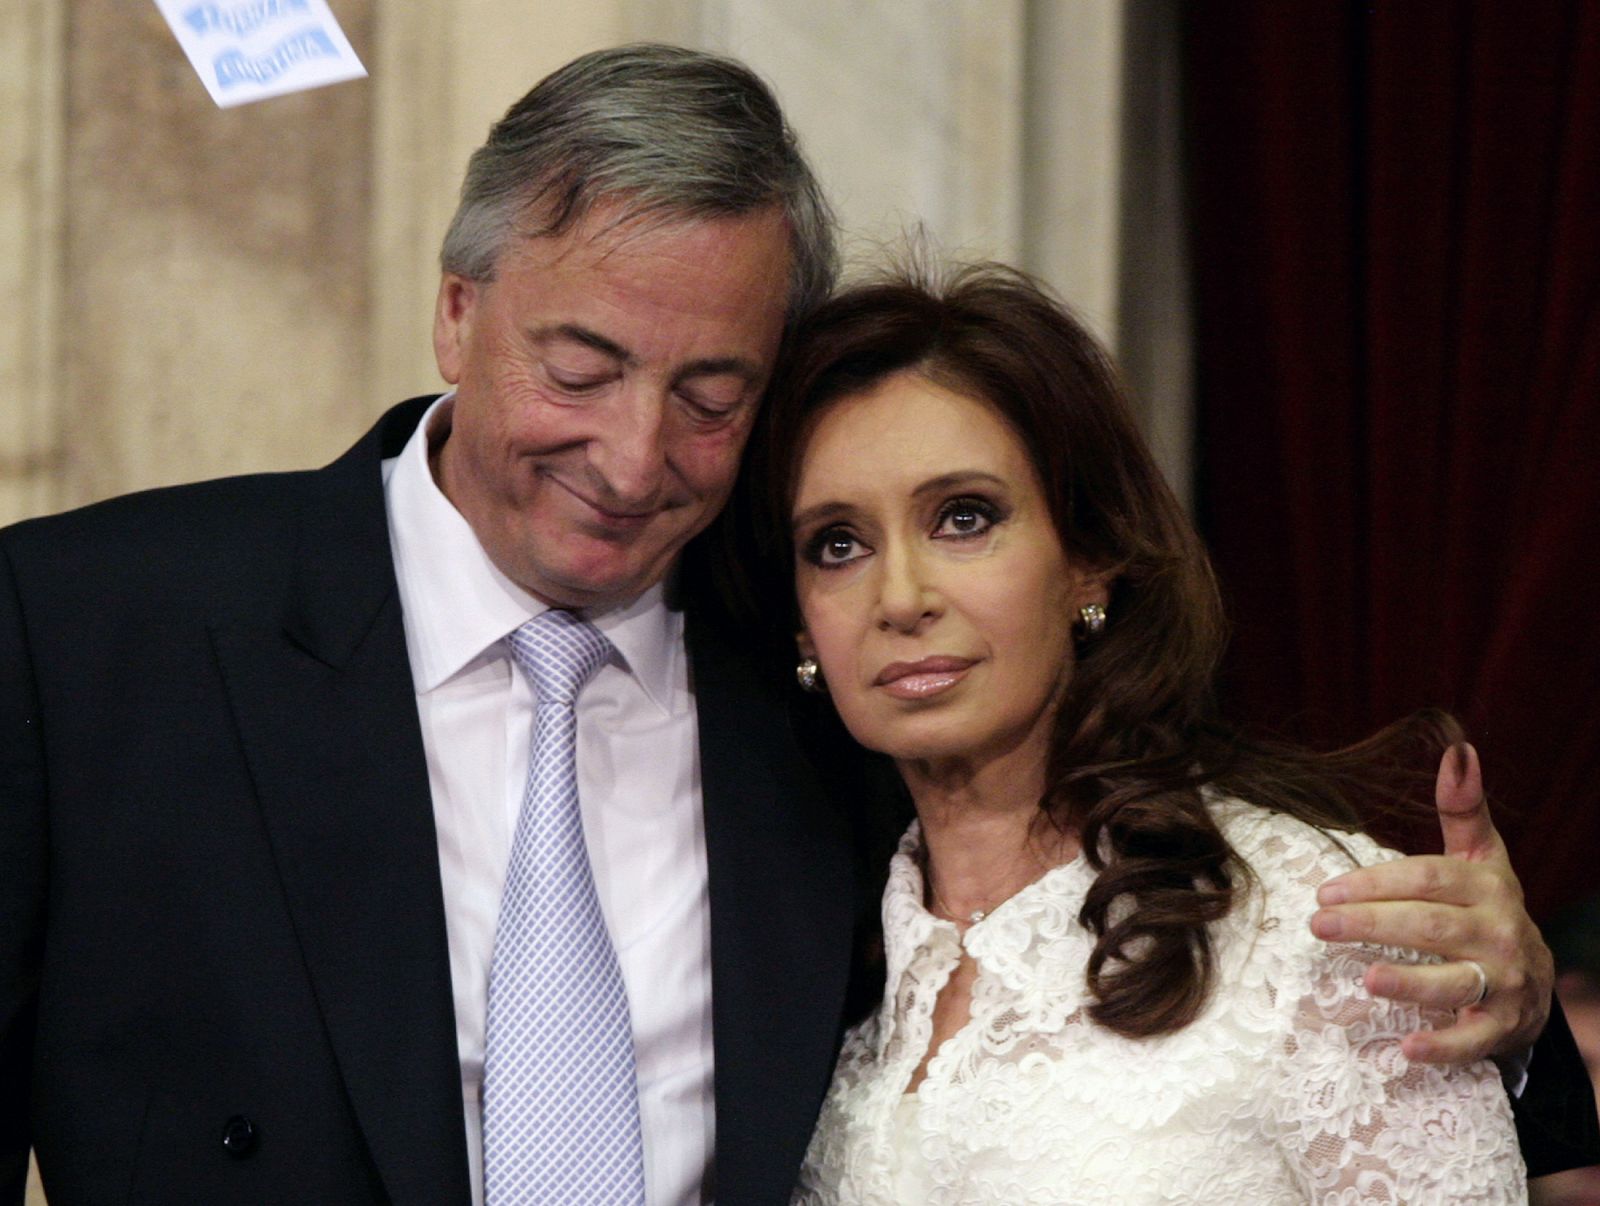 El tándem político de los Kirchner se queda huérfano tras la inesperada muerte del ex presidente argentino.